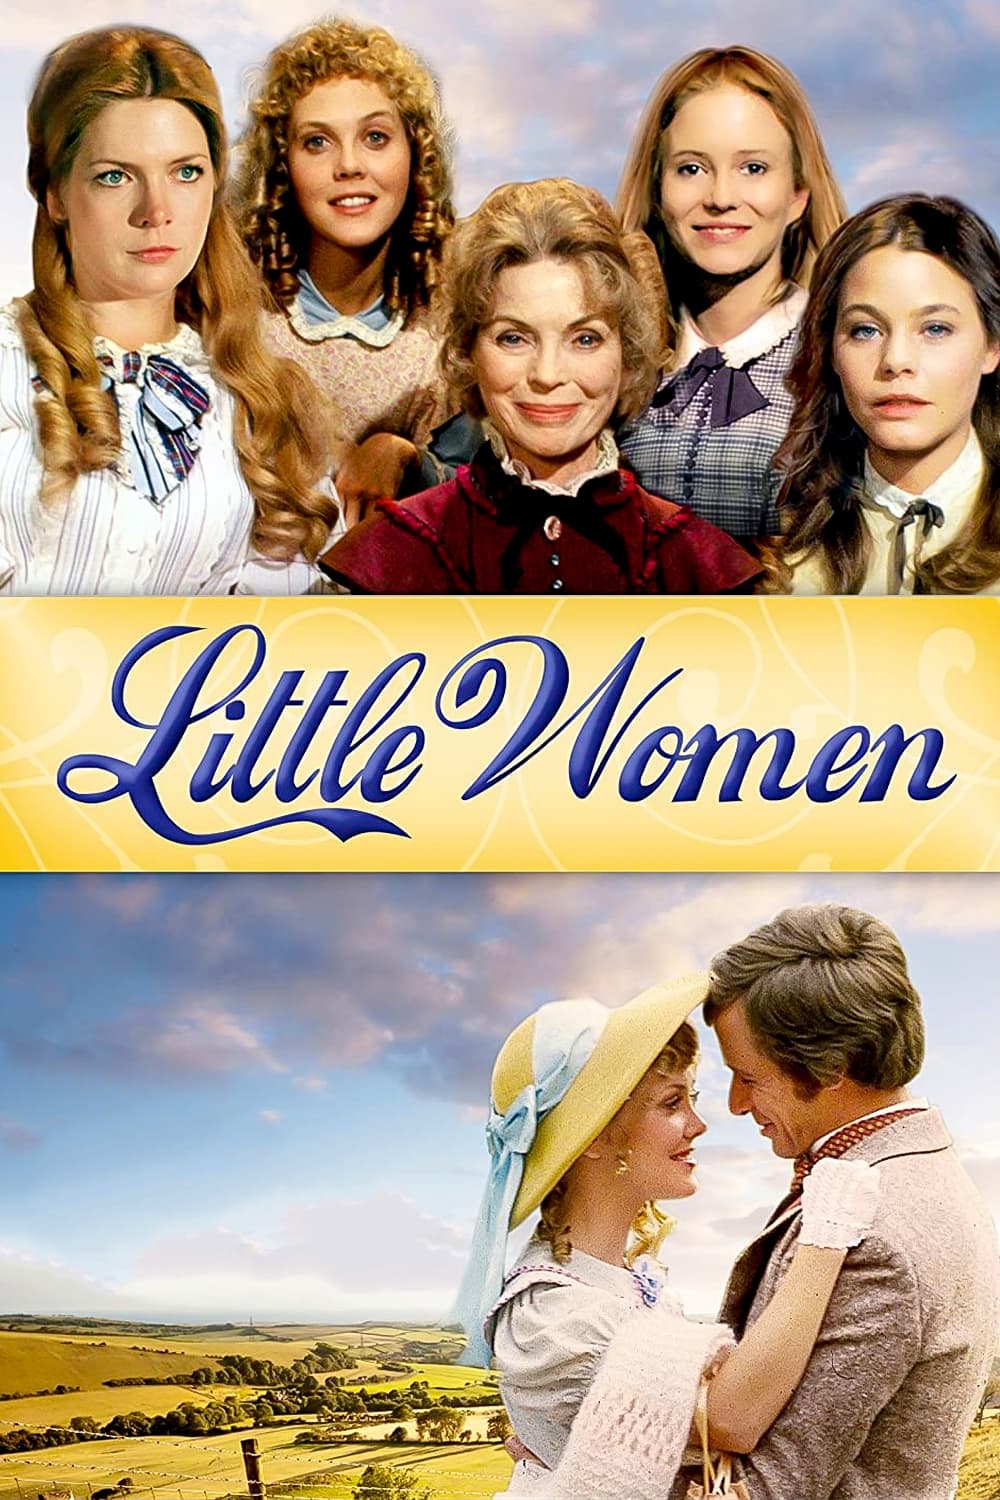 Little Women (1978)